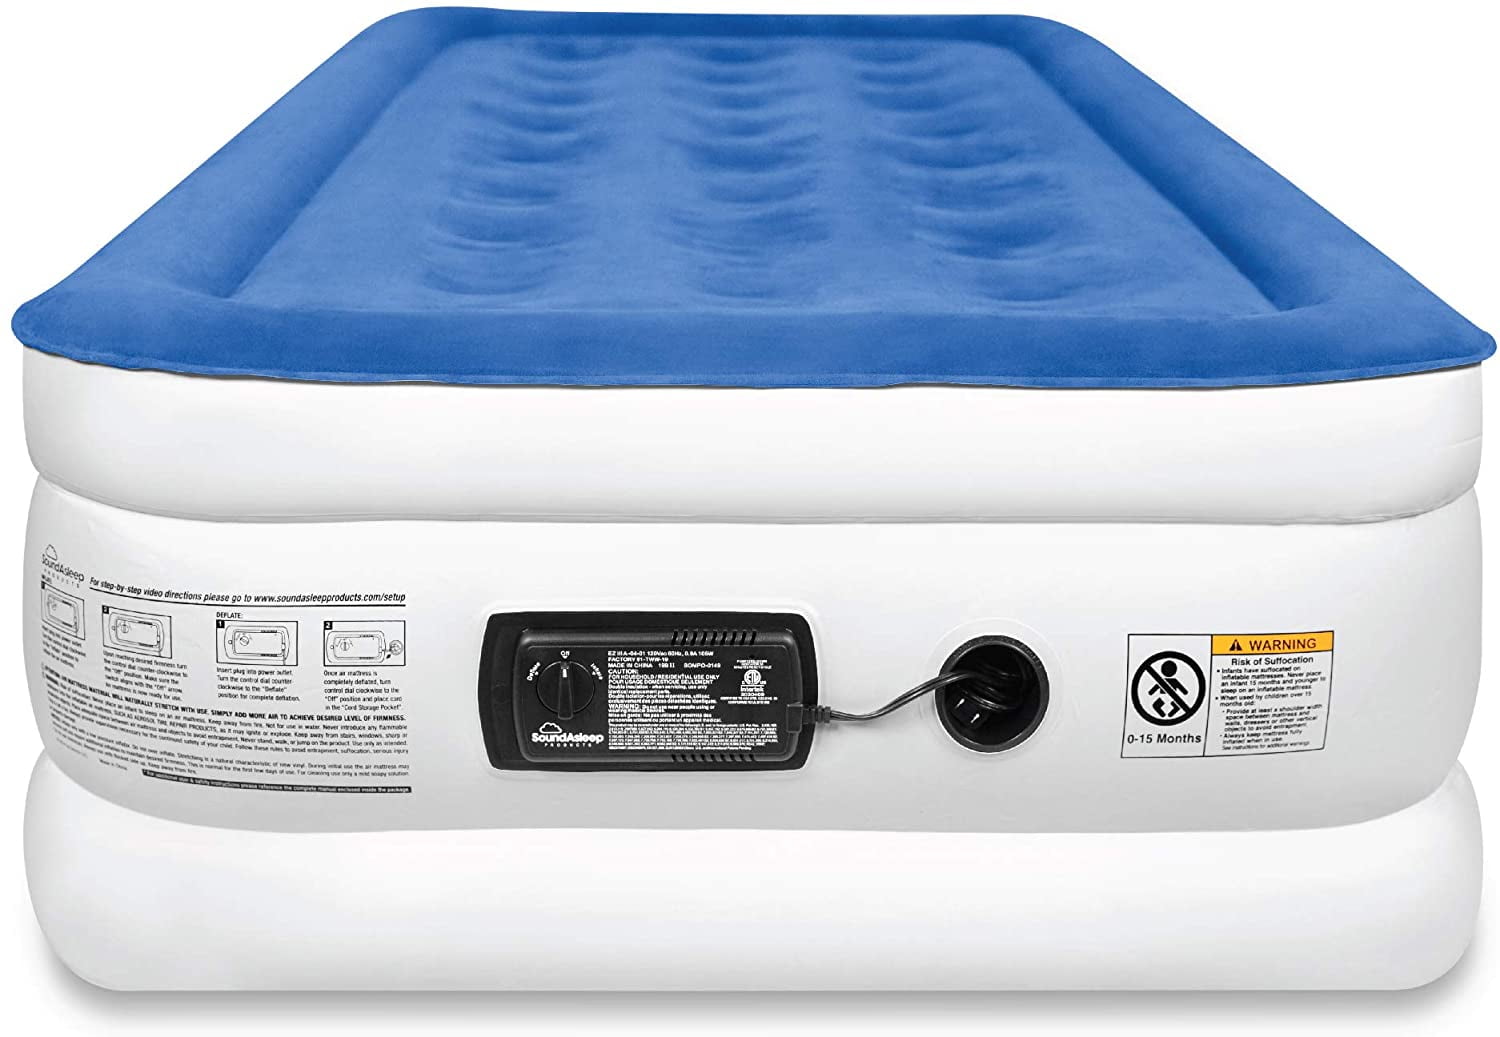 soundasleep dream series air mattress with comfortcoil technology